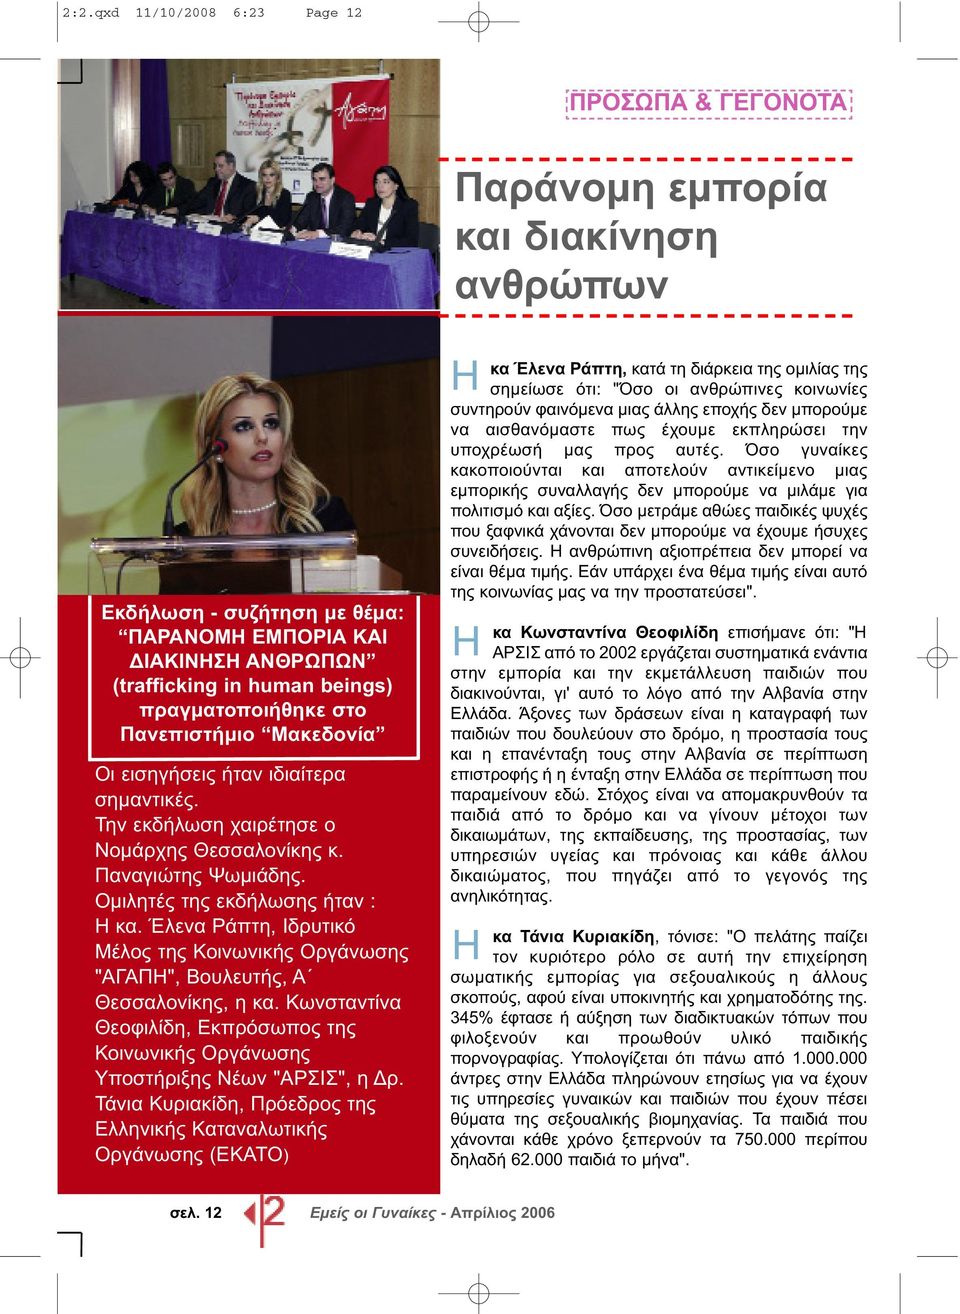 Έλενα Ράπτη, Ιδρυτικό Μέλος της Κοινωνικής Οργάνωσης "ΑΓΑΠΗ", Βουλευτής, Α Θεσσαλονίκης, η κα. Κωνσταντίνα Θεοφιλίδη, Εκπρόσωπος της Κοινωνικής Οργάνωσης Υποστήριξης Νέων "ΑΡΣΙΣ", η Δρ.